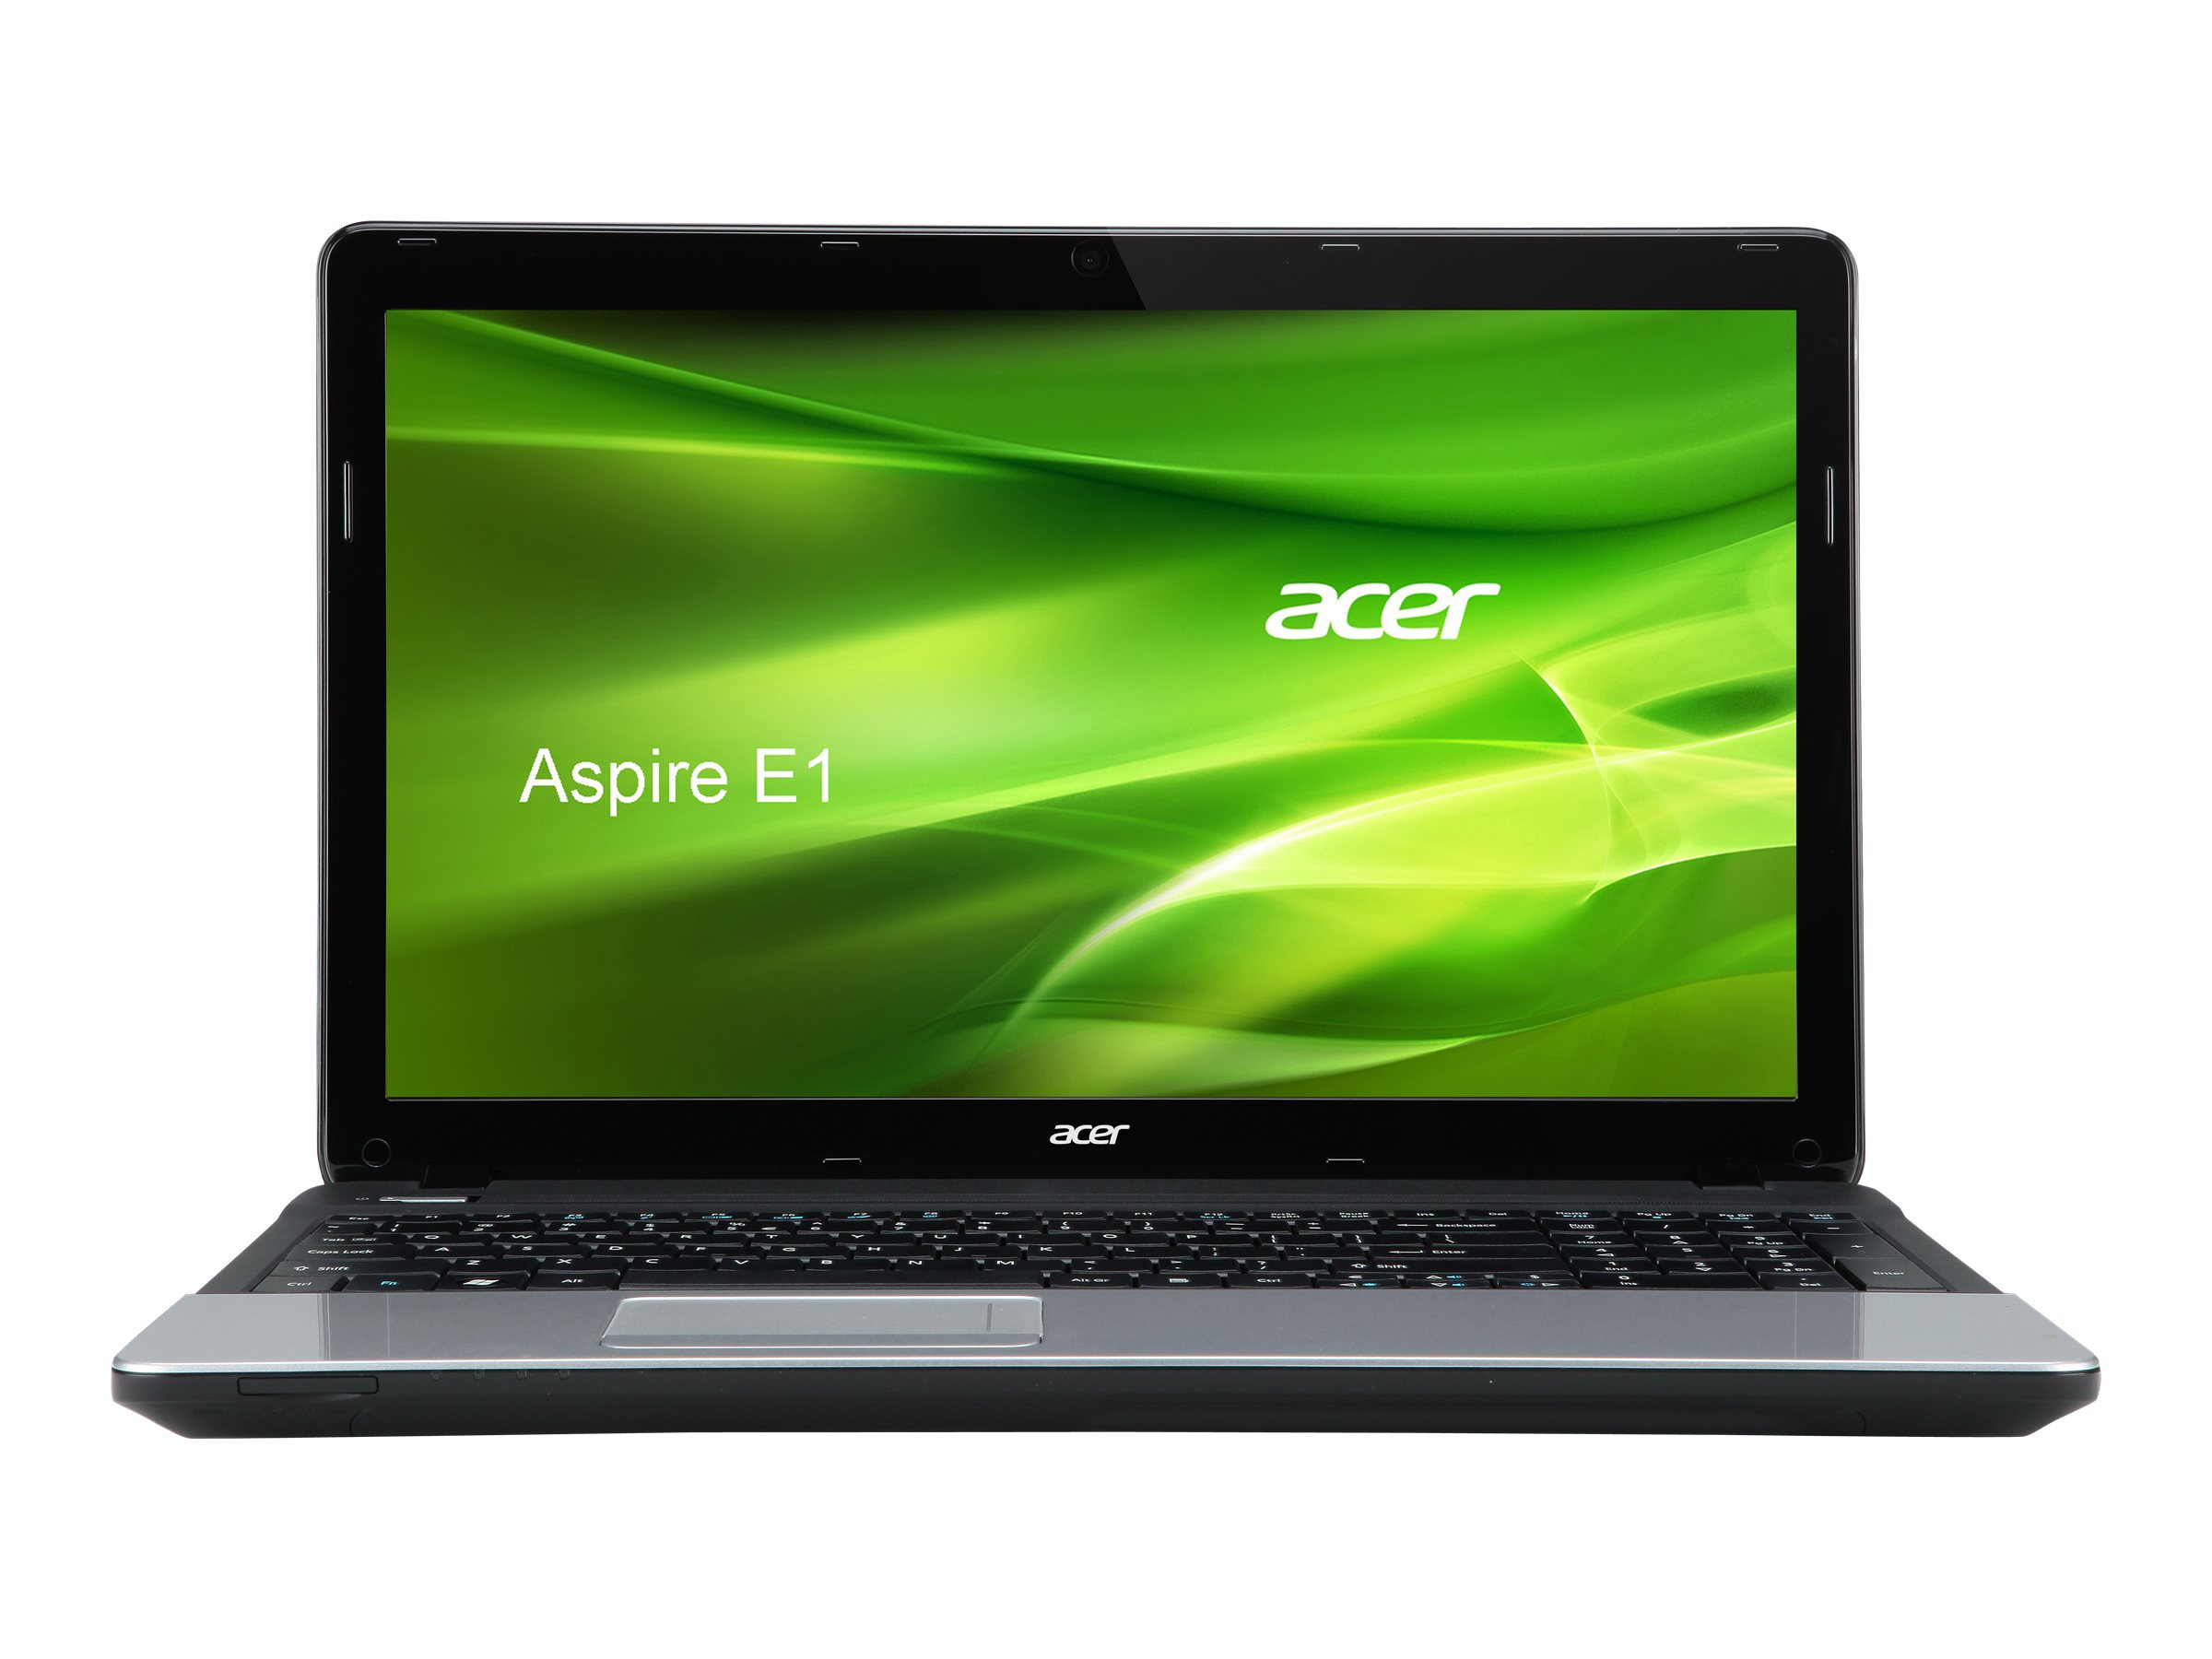 Acer Aspire E1 (570)